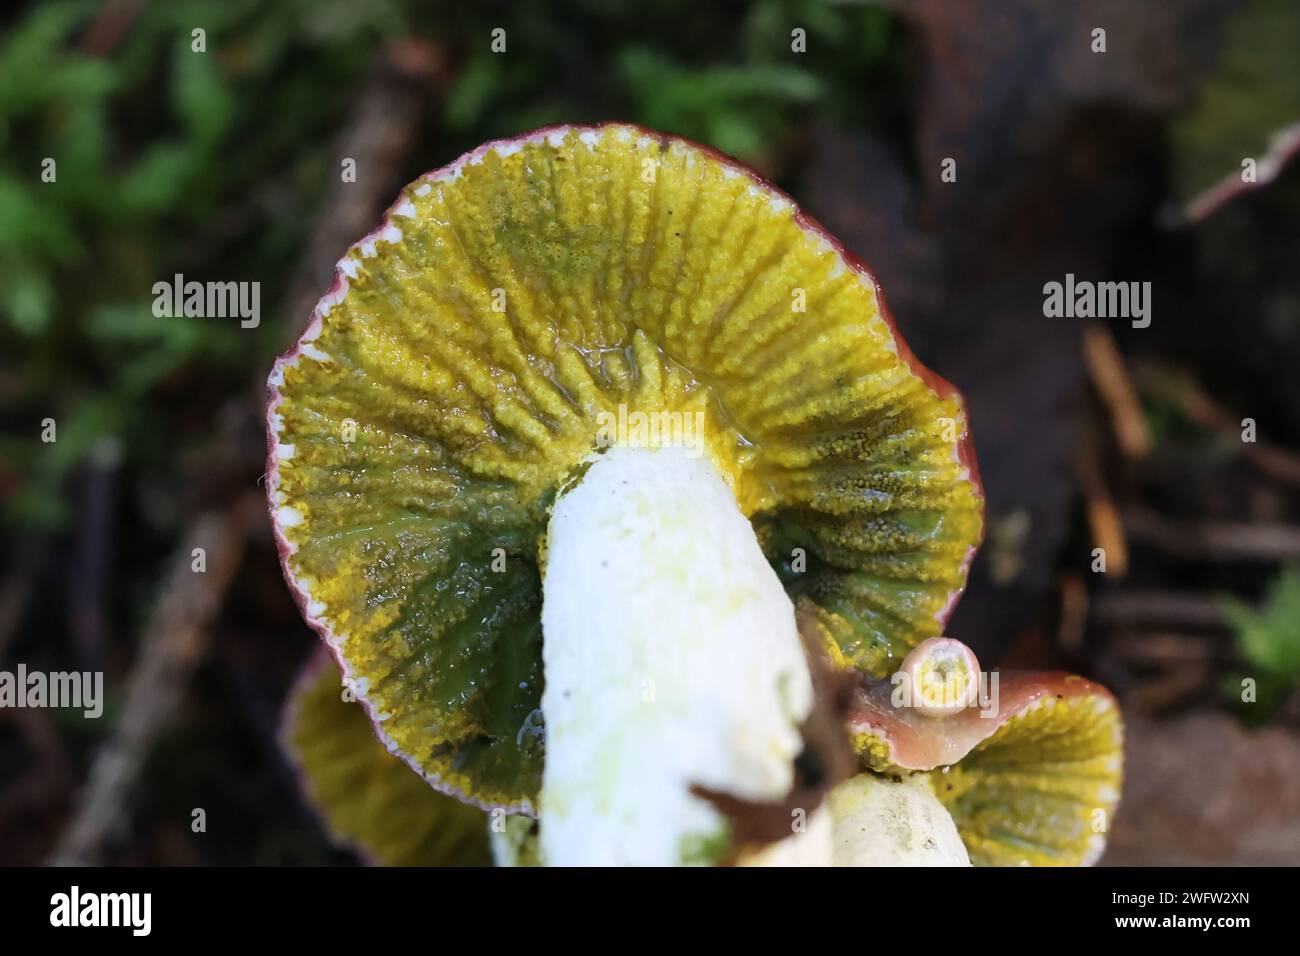 Hypomyces luteovirens, ascomycète parasite enveloppant diverses espèces de brittleguills à croûte jaune, champignon sauvage de Finlande Banque D'Images